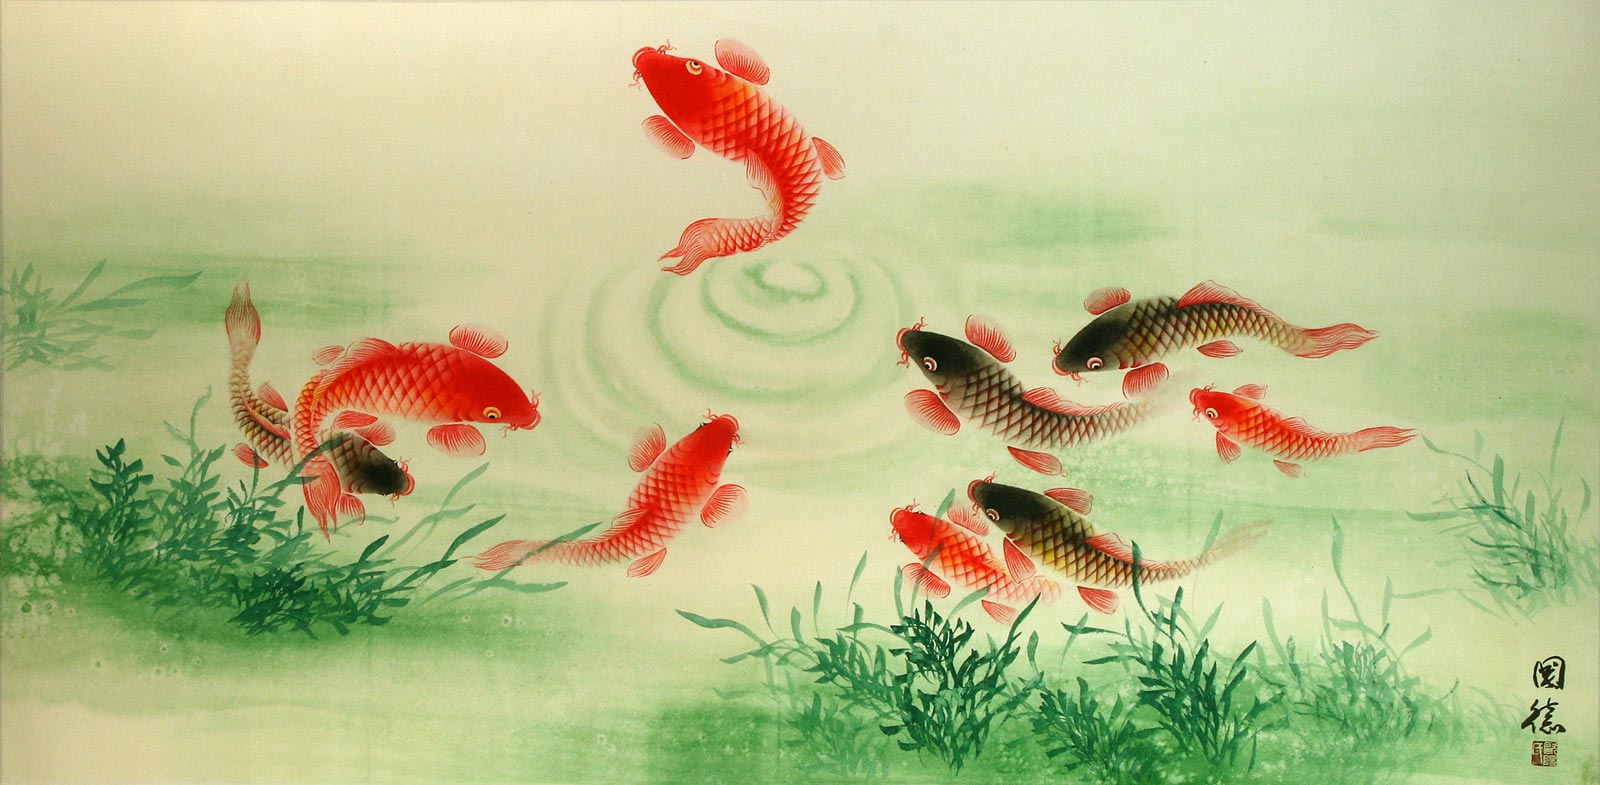 Koi Fish Feeding - Chinese Painting